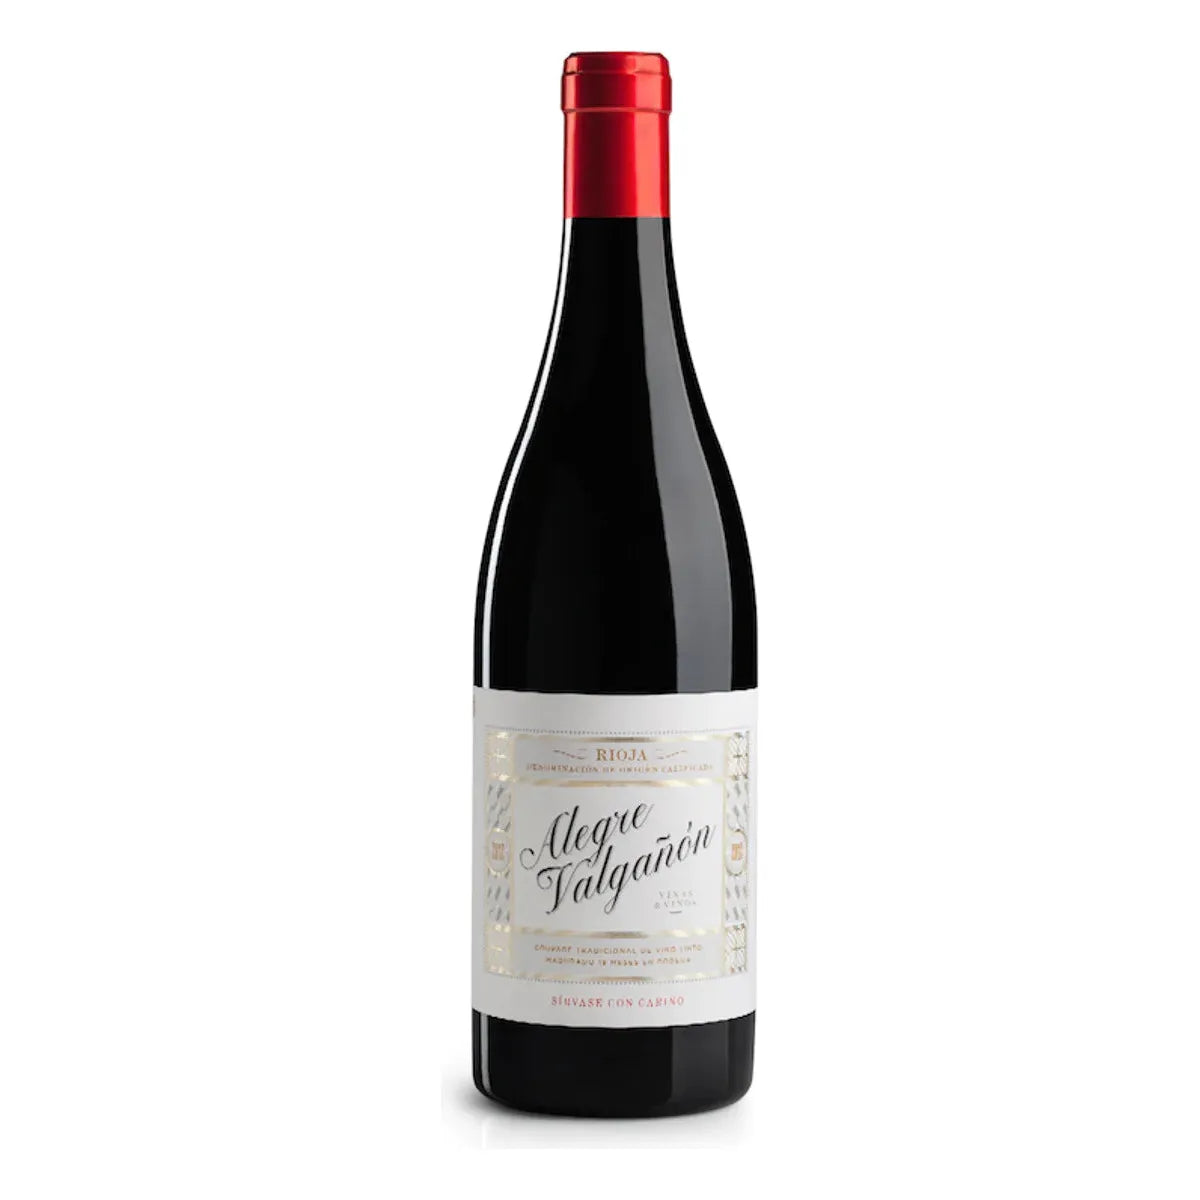 Alegre y Valgan Tempranillo-Garnacha Rioja (Sajazarra y Cardenas) 2020  (6 bottles)